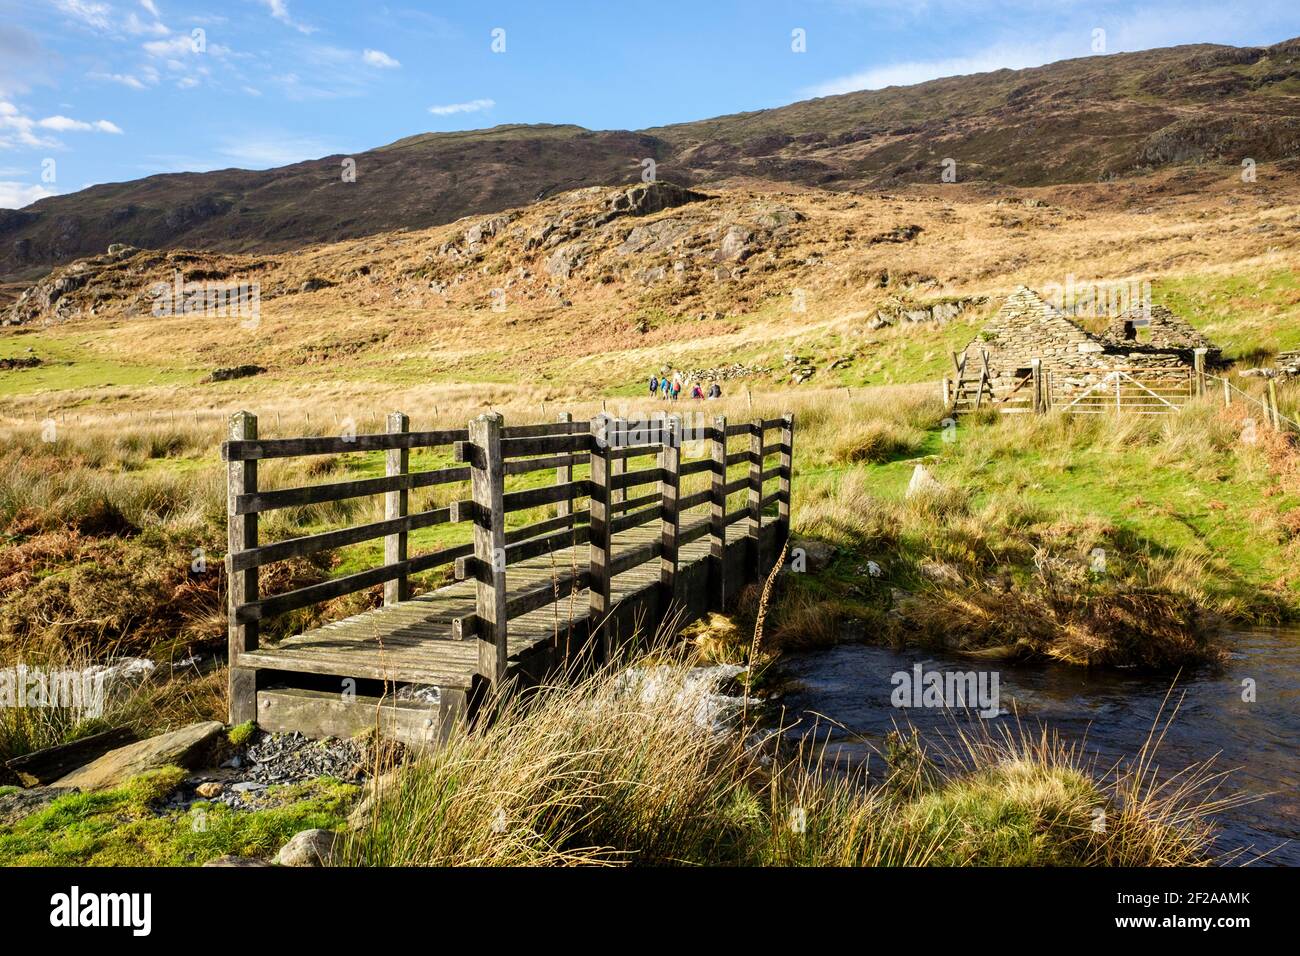 Passerelle traversant un ruisseau avec des randonneurs éloignés sur un sentier dans le parc national de Snowdonia. Beddgelert, Gwynedd, pays de Galles, Royaume-Uni, Grande-Bretagne Banque D'Images